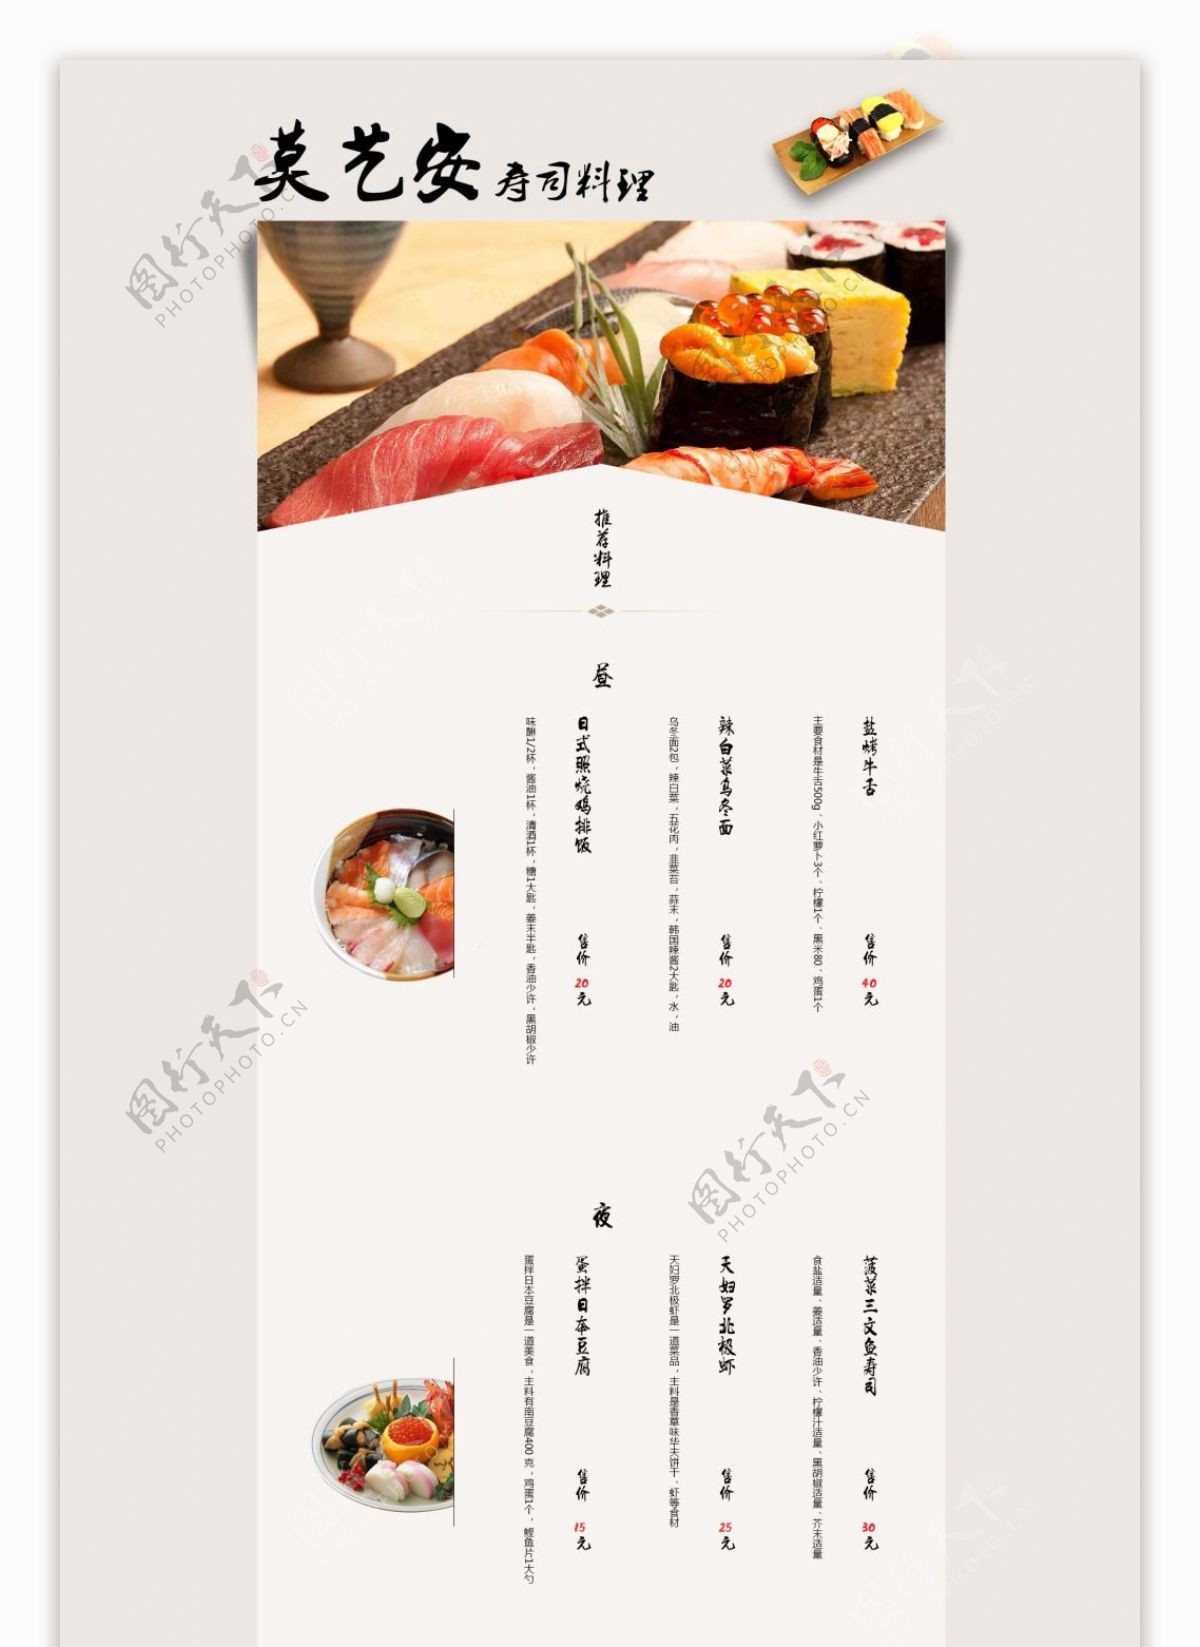 日式美食专题页